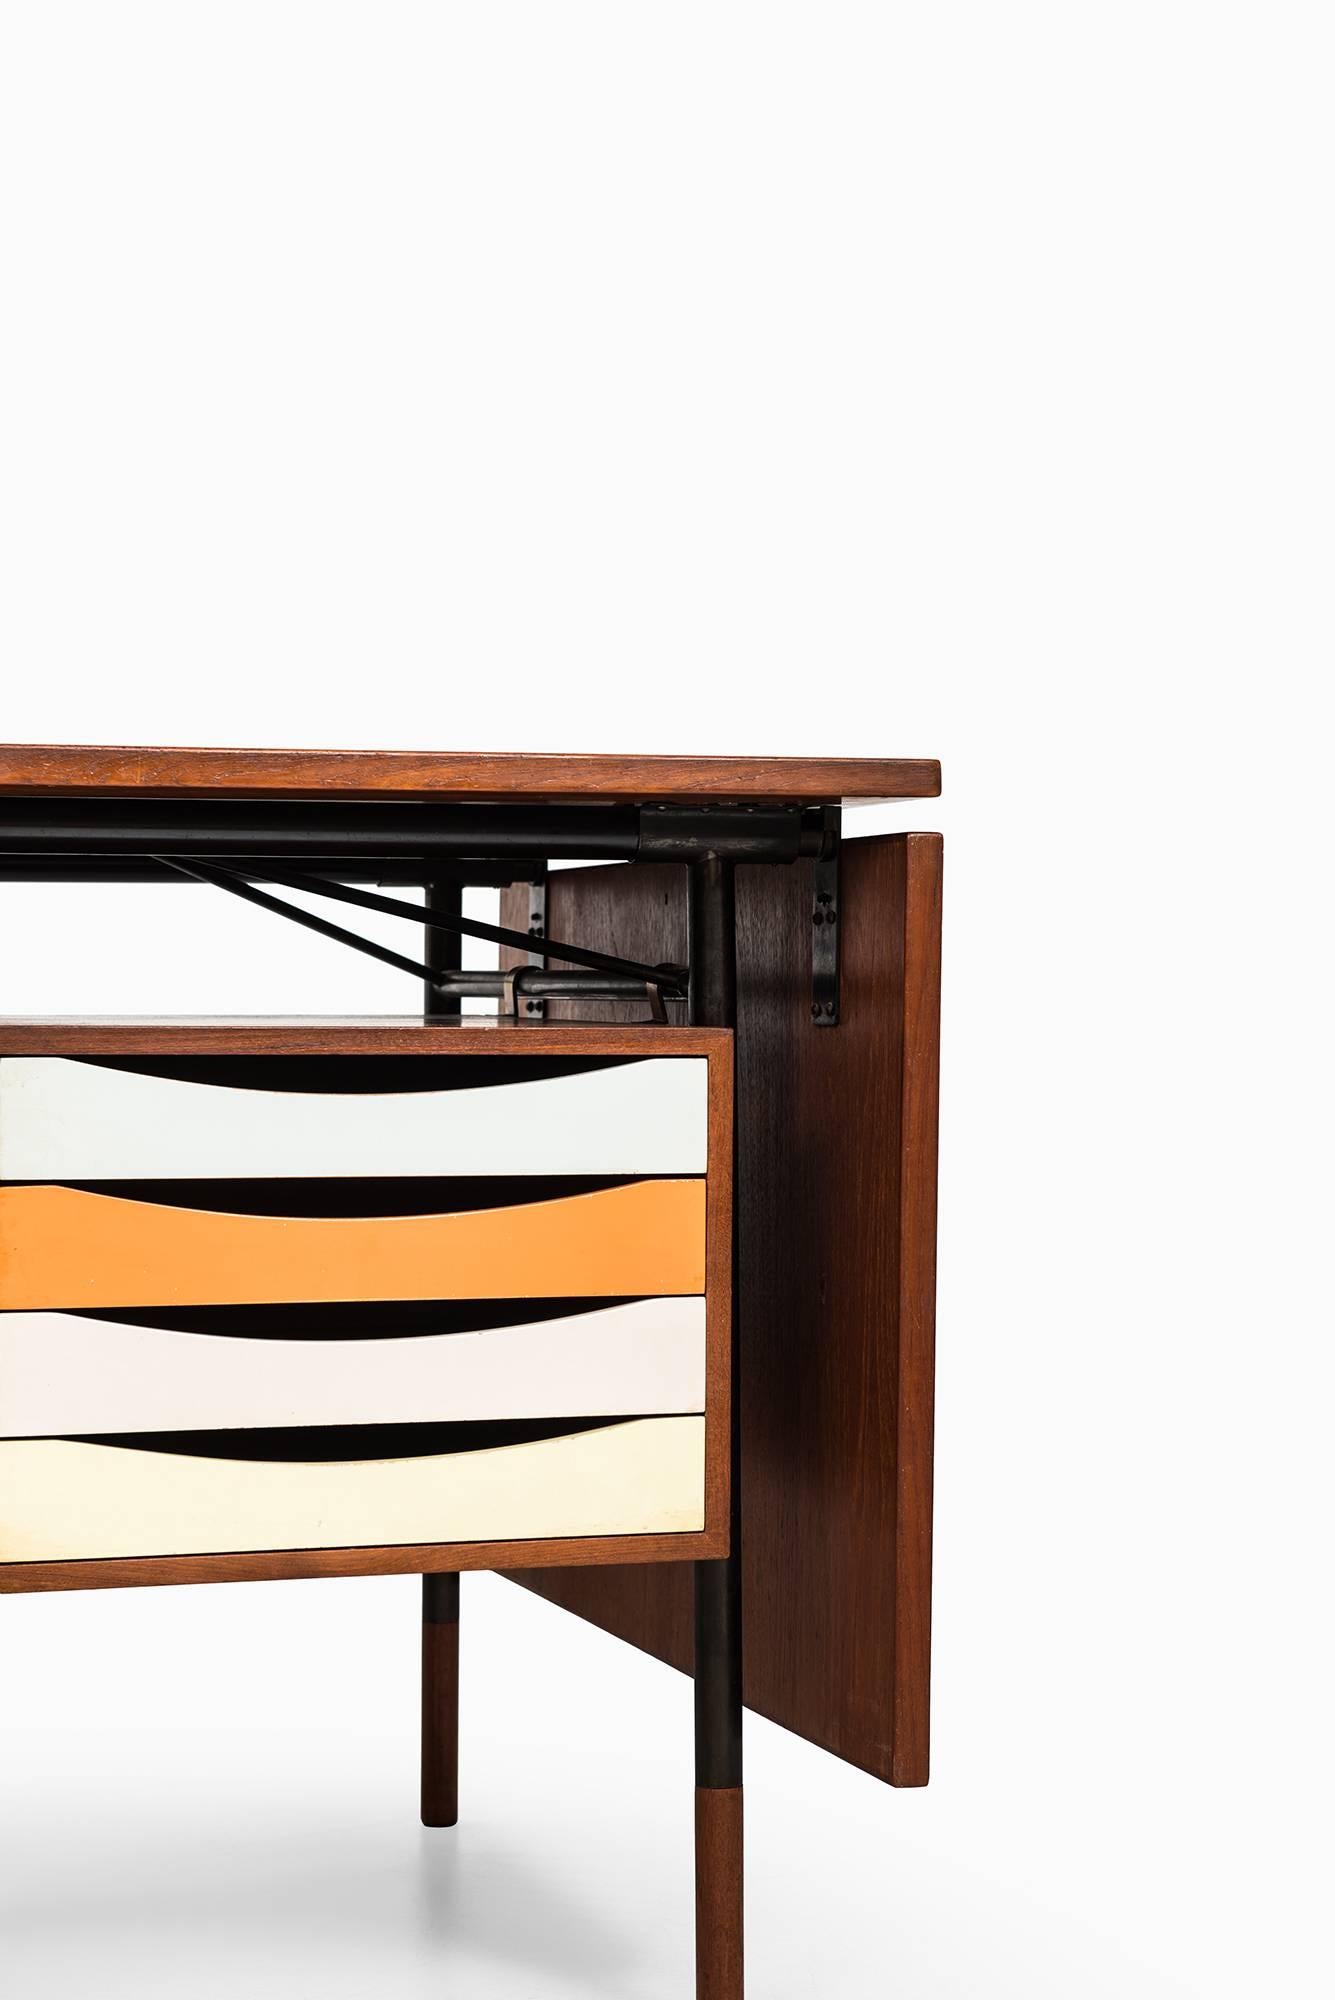 Rare desk model BO-69 / Nyhavn designed by Finn Juhl. Produced by Bovirke in Denmark.